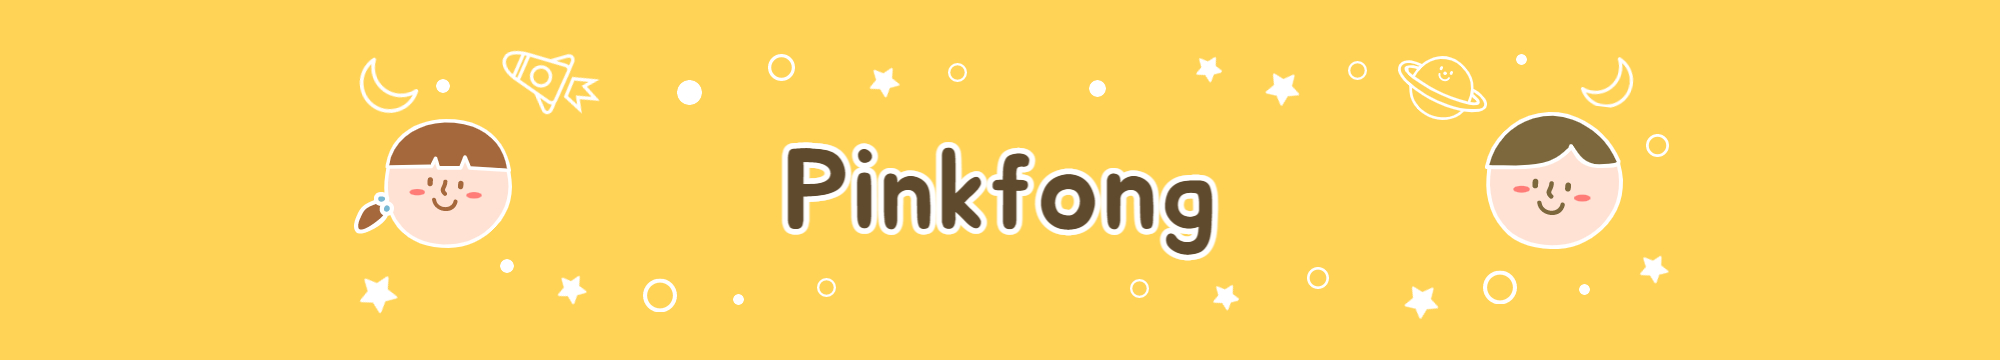 영유 노래 추천 - Pinkfong